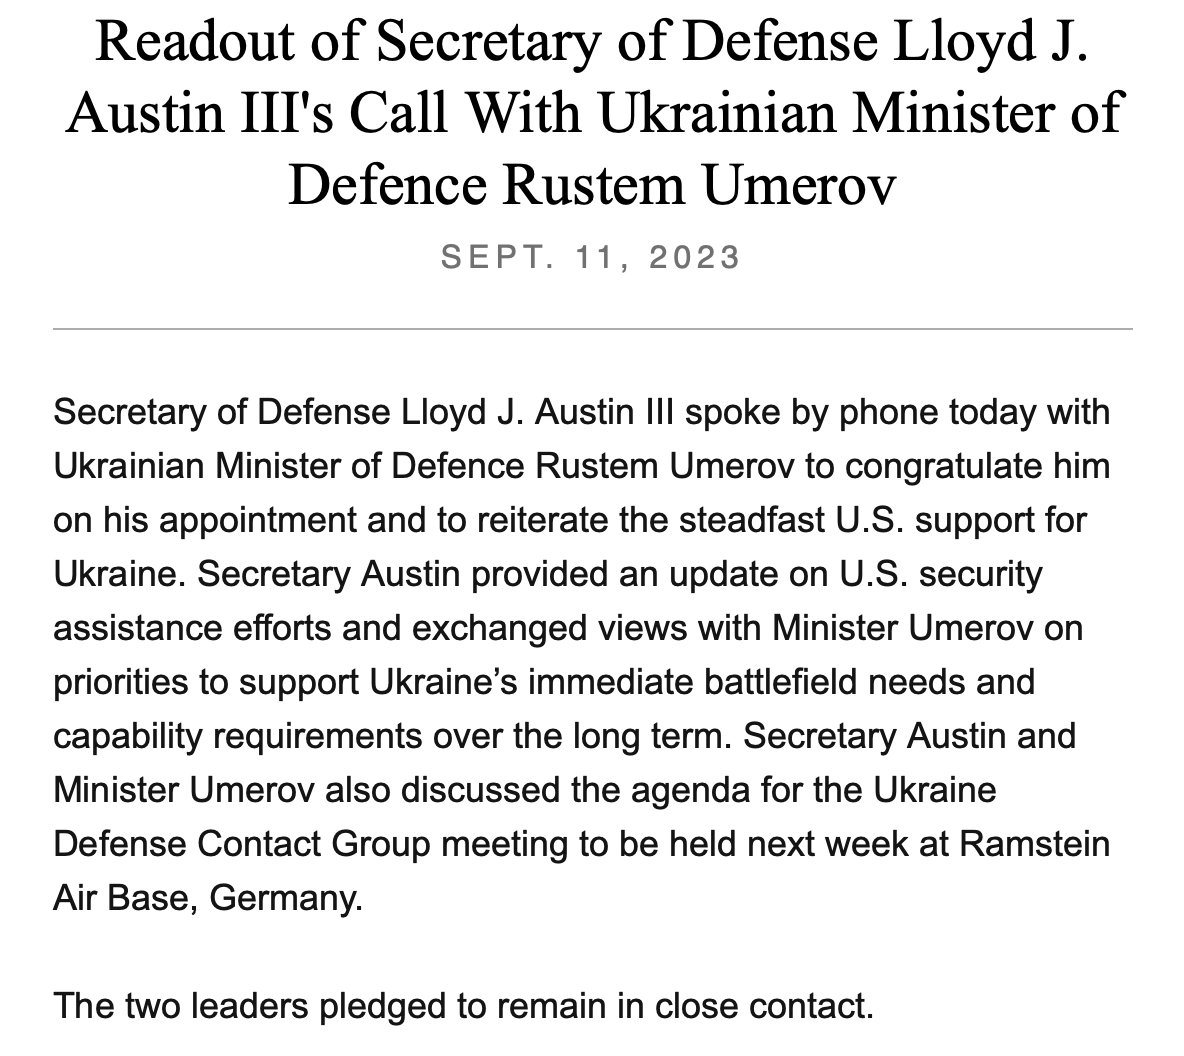 据 @DeptofDefense 报道，美国 @SecDef Lloyd Austin 周一与乌克兰新任国防部长 Rustem Umerov 进行了交谈。通话内容是重申美国对乌克兰的坚定支持，并向乌梅罗夫通报美国援助的最新情况